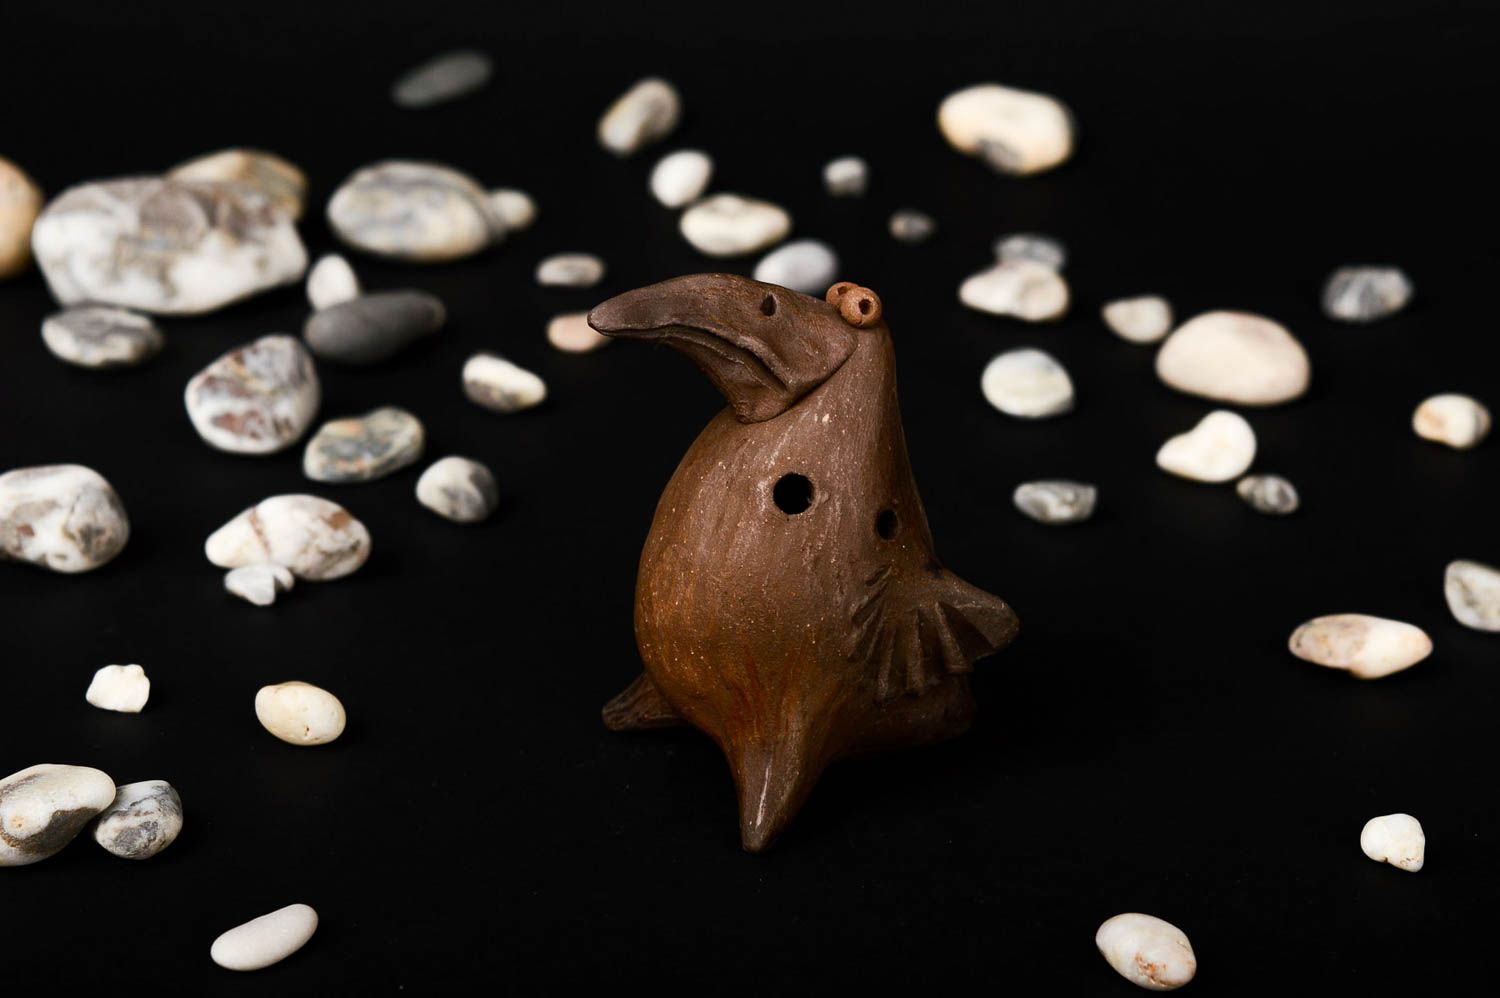 Sifflet oiseau d'eau avec corde, 100 pièces, artisanat en argile